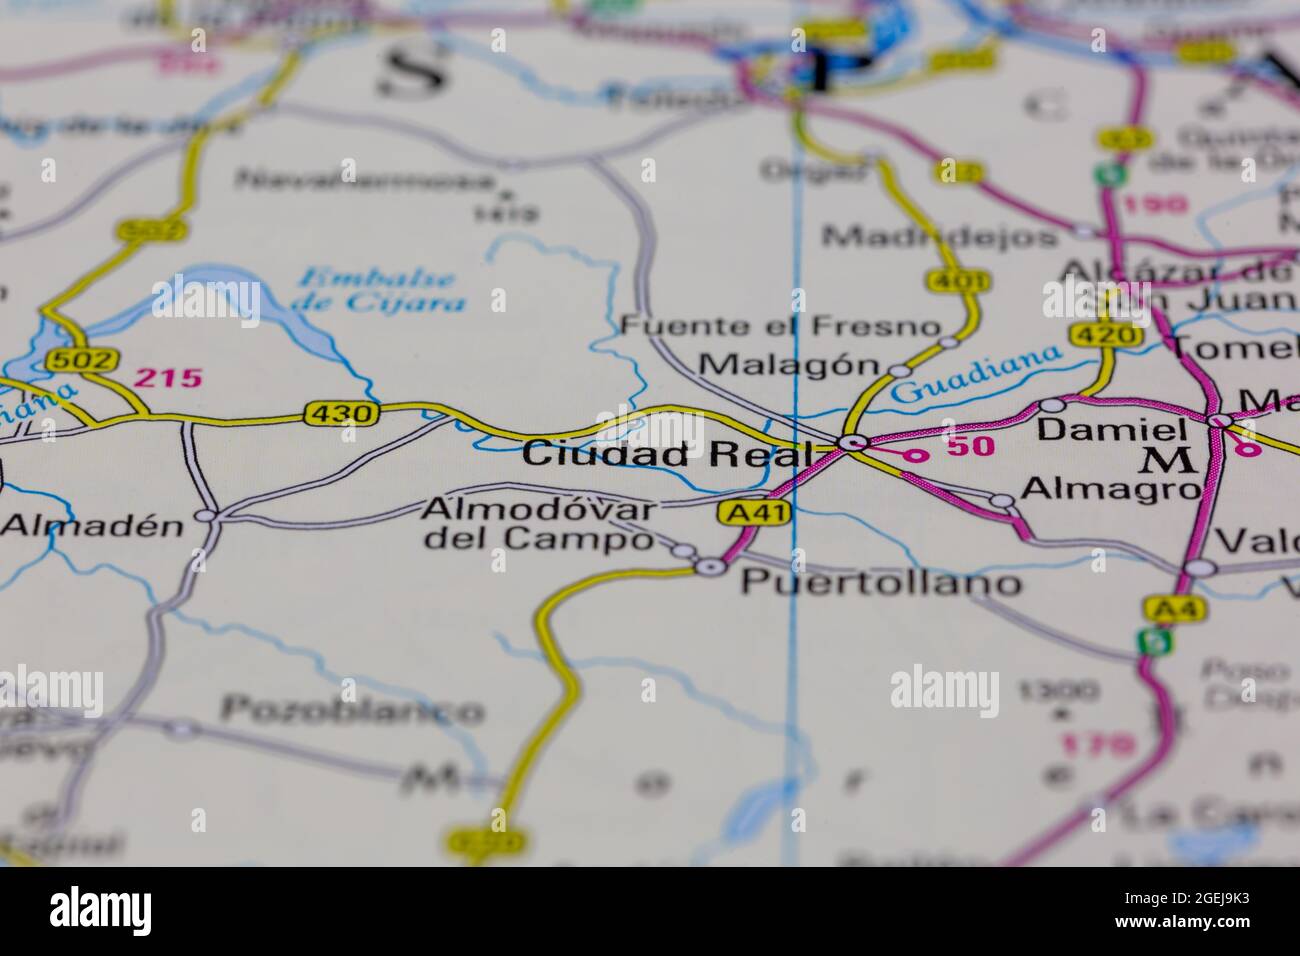 Ciudad Real Spanien wird auf einer Straßenkarte oder Geografie-Karte angezeigt Stockfoto